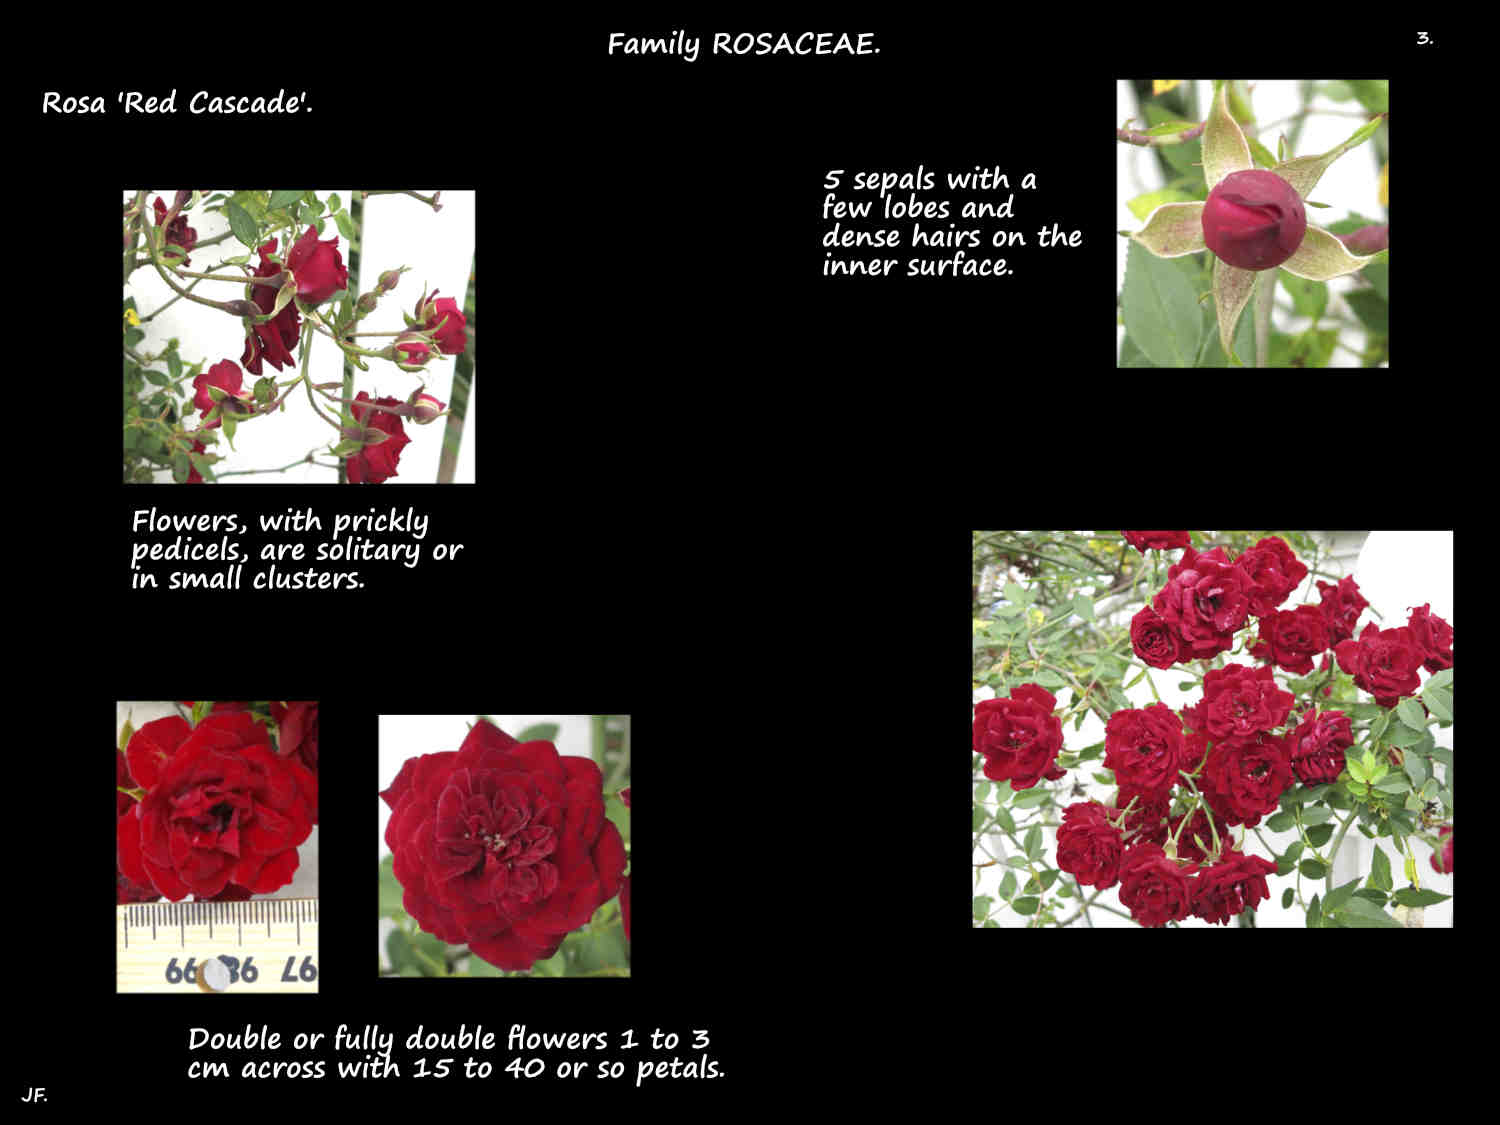 3 Deep red velvety Rosa 'Red Cascade' flowers